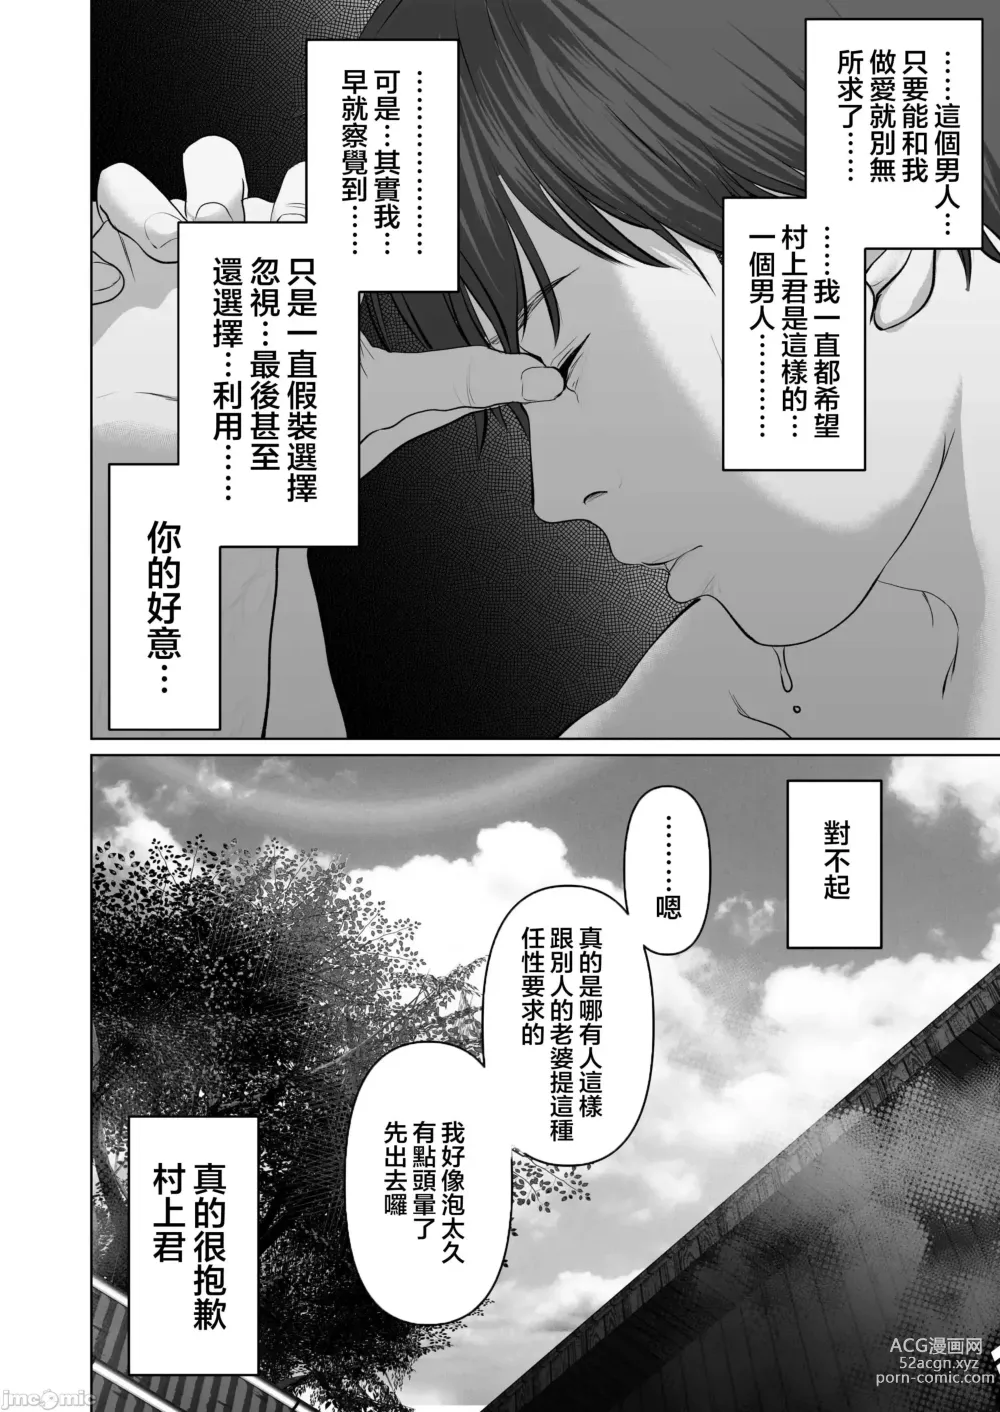 Page 558 of doujinshi Anata ga Nozomu nara 1-5